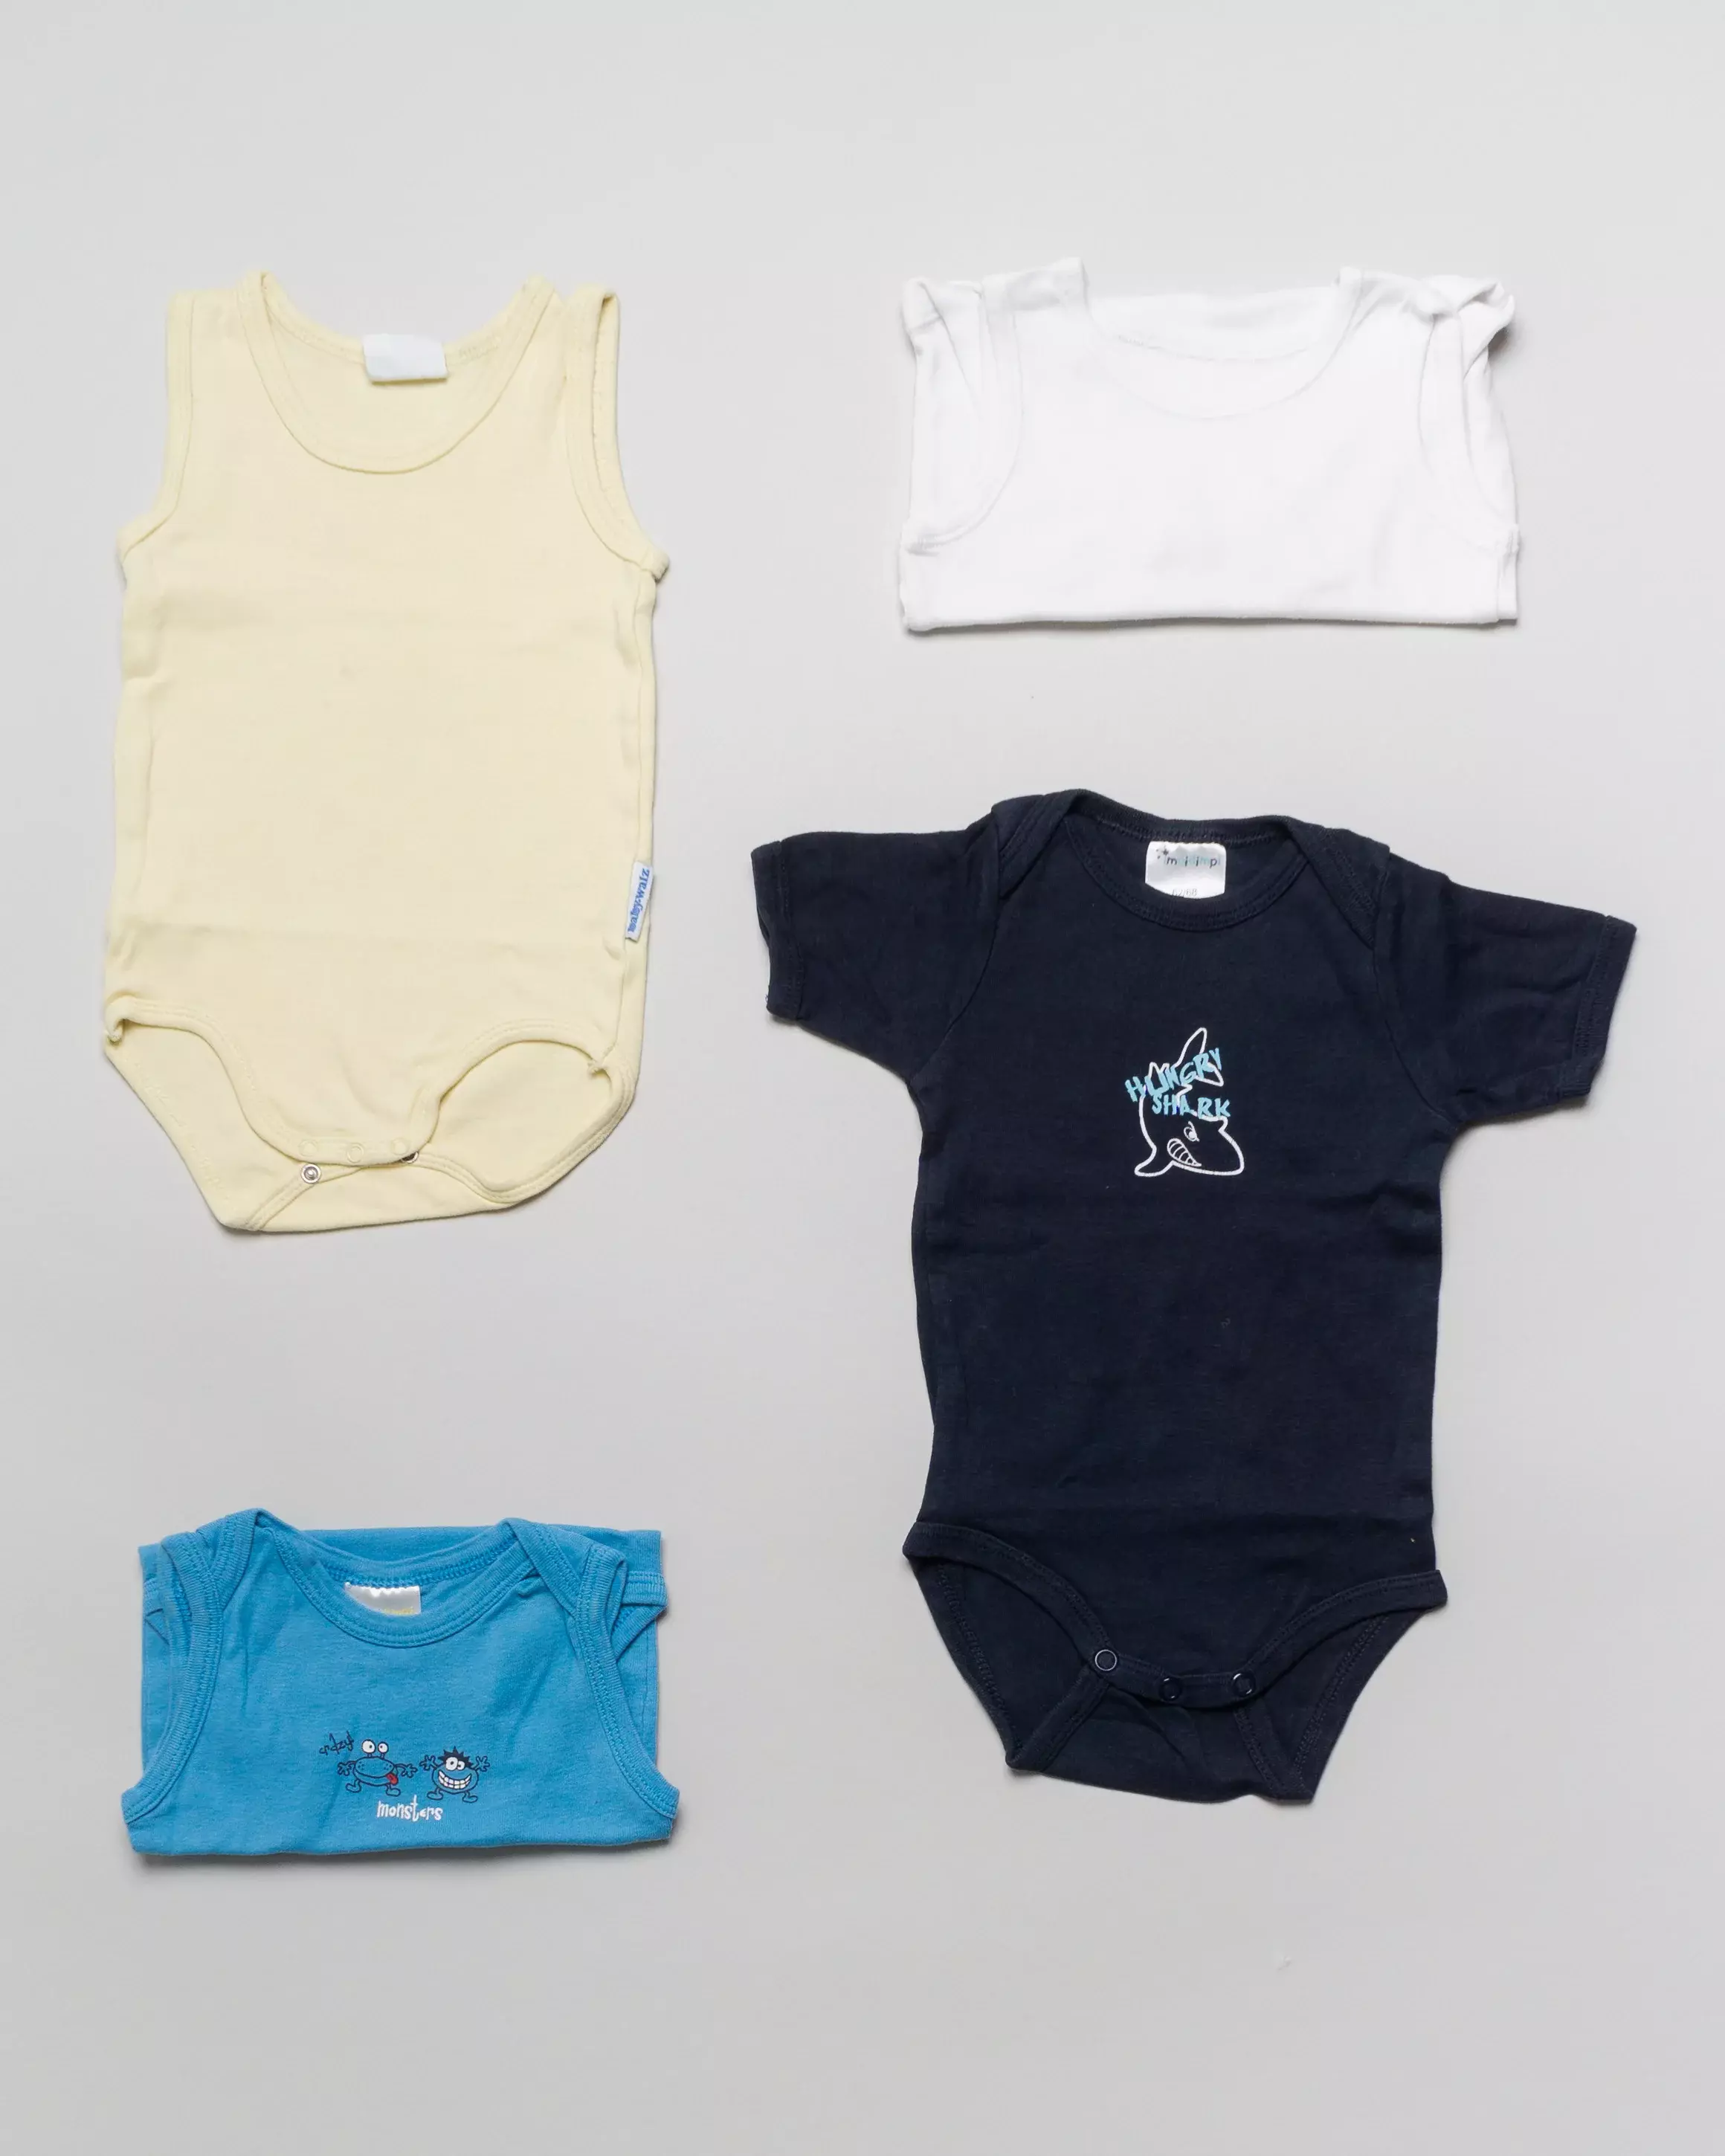 4 Bodies: 3 Unterhemd-Bodies & 1 kurzarm Body Gr. 68 – blau, gelb, weiß, Hai, Tiere, Set, Pack Baby